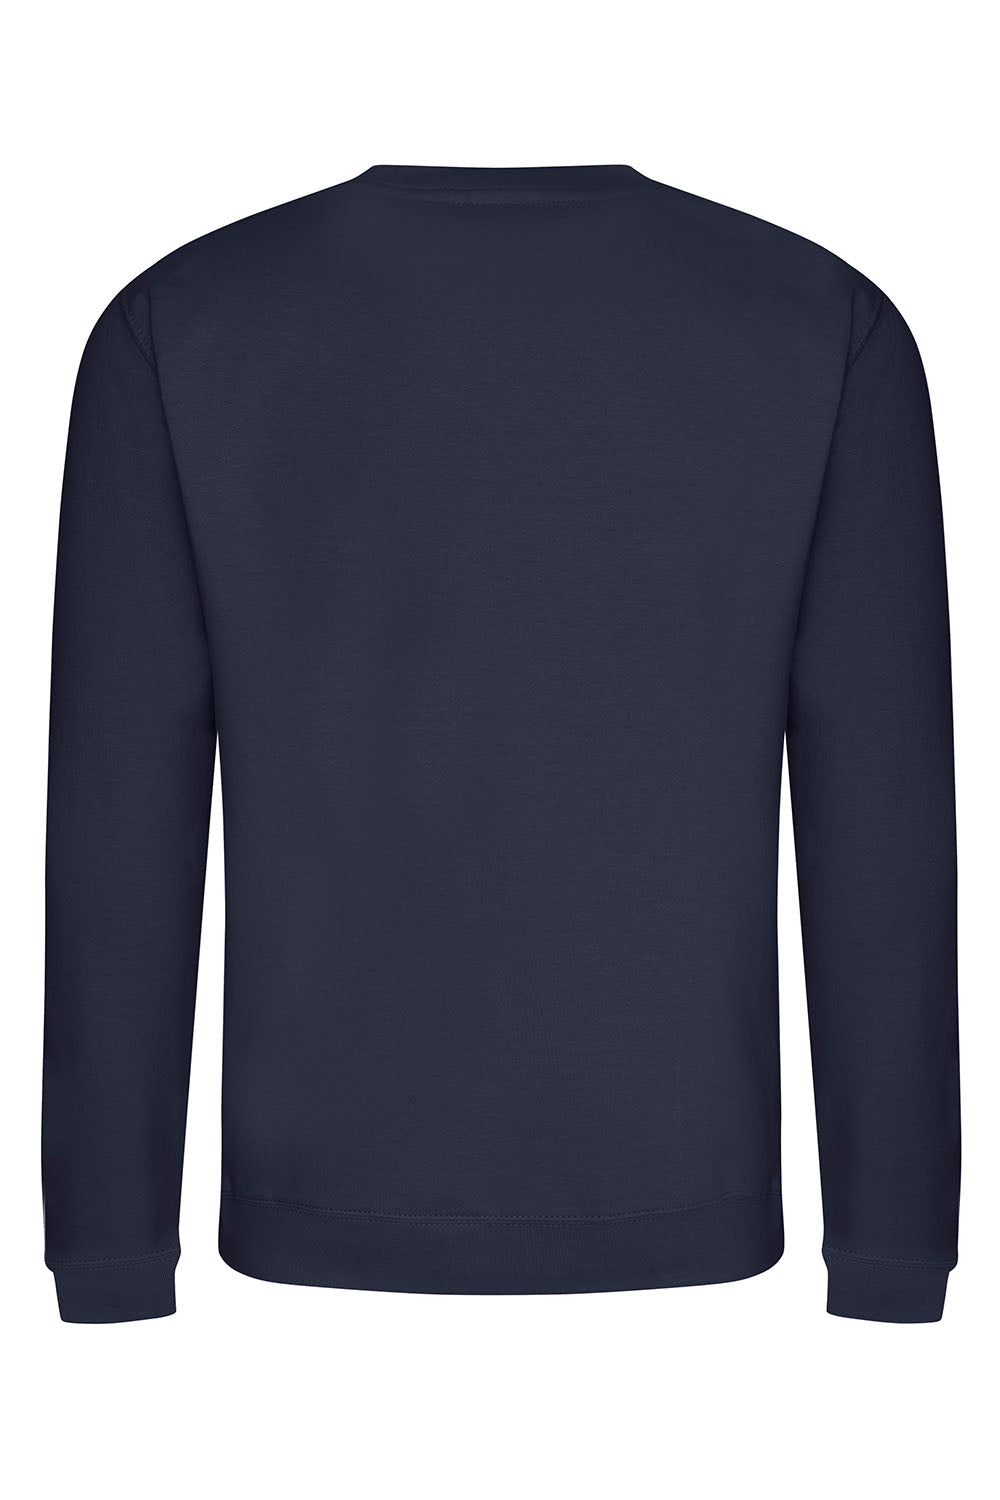 Plain Sweatshirt In Oxford Navy (Single).